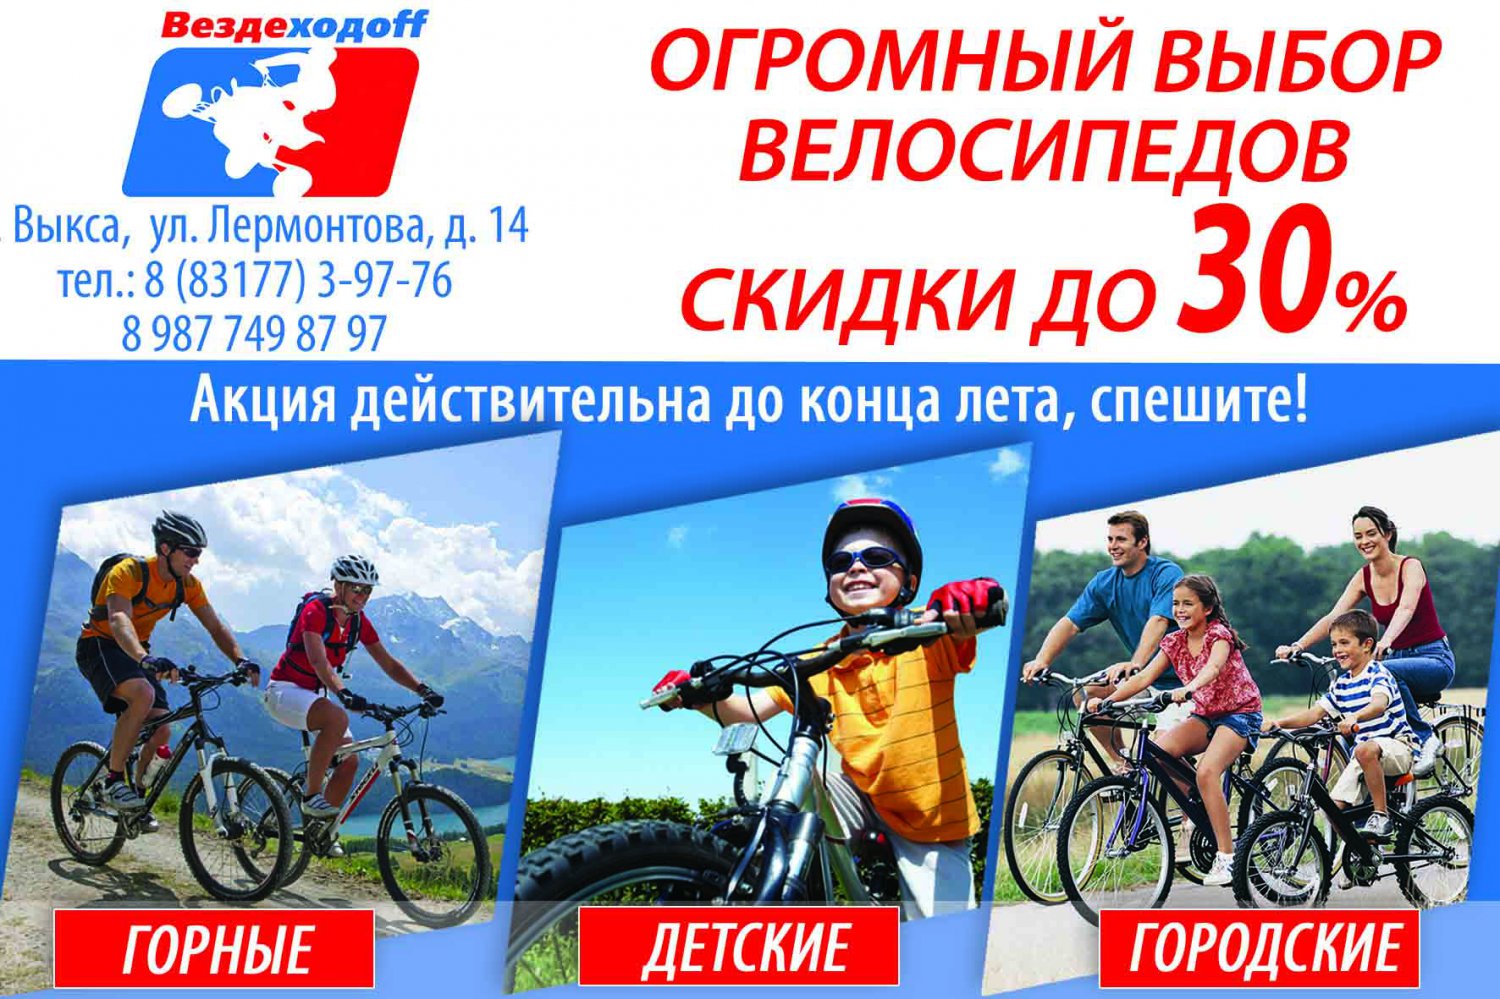 Огромный выбор велосипедов в мотосалонах «Вездеходоff» и «X Level»: только этим летом скидка до 30%